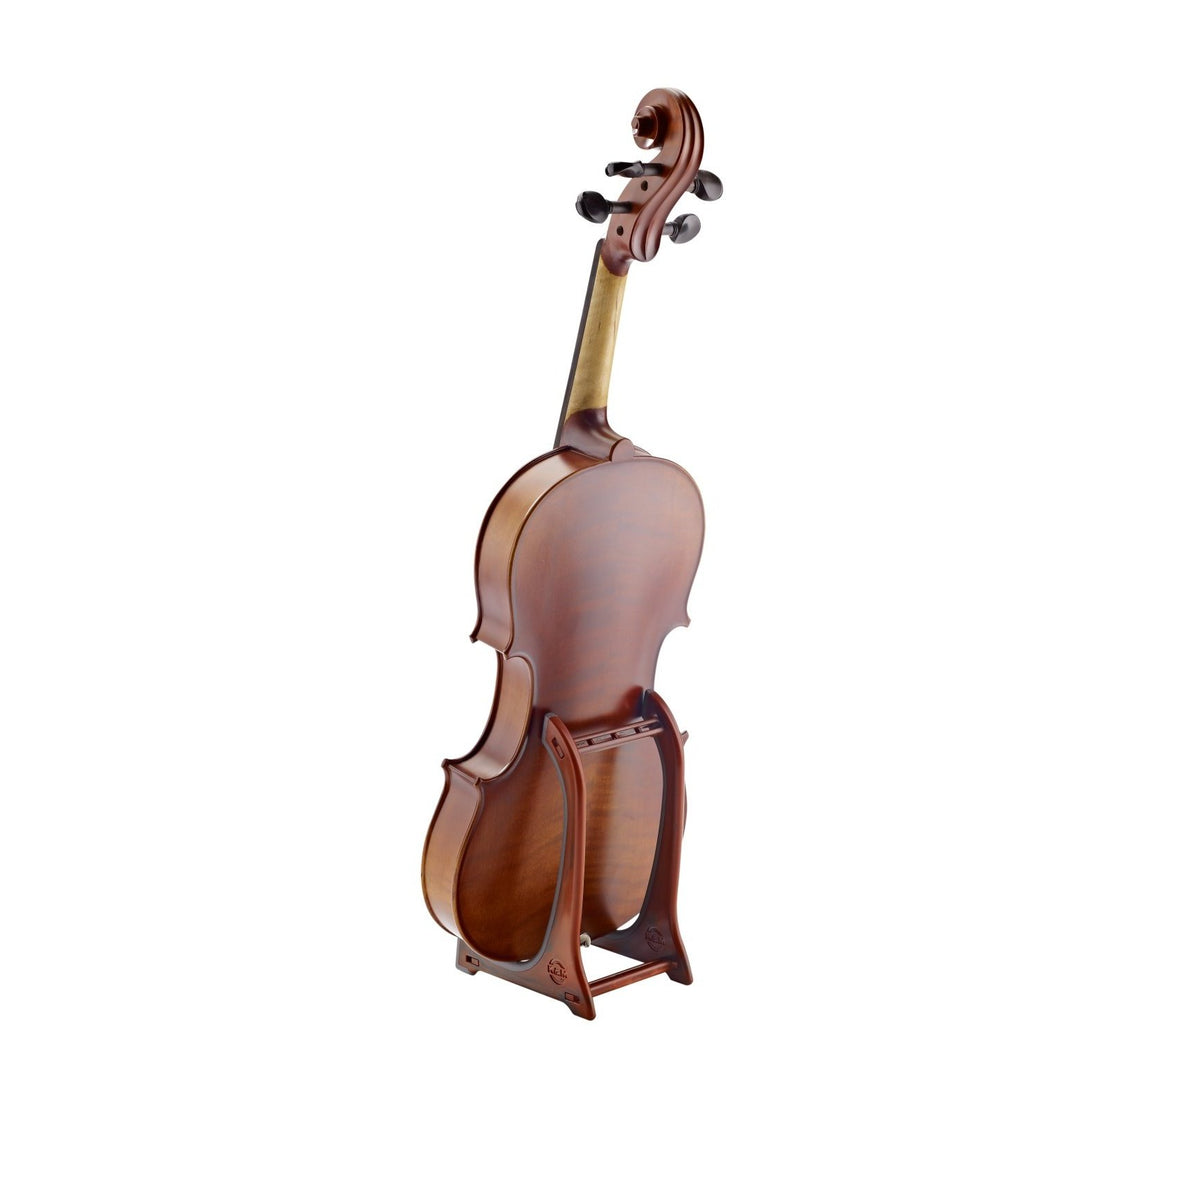 KÃ¶nig &amp; Meyer - 15550 Violin/Ukulele Stand-Instrument Stand-KÃ¶nig &amp; Meyer-Music Elements